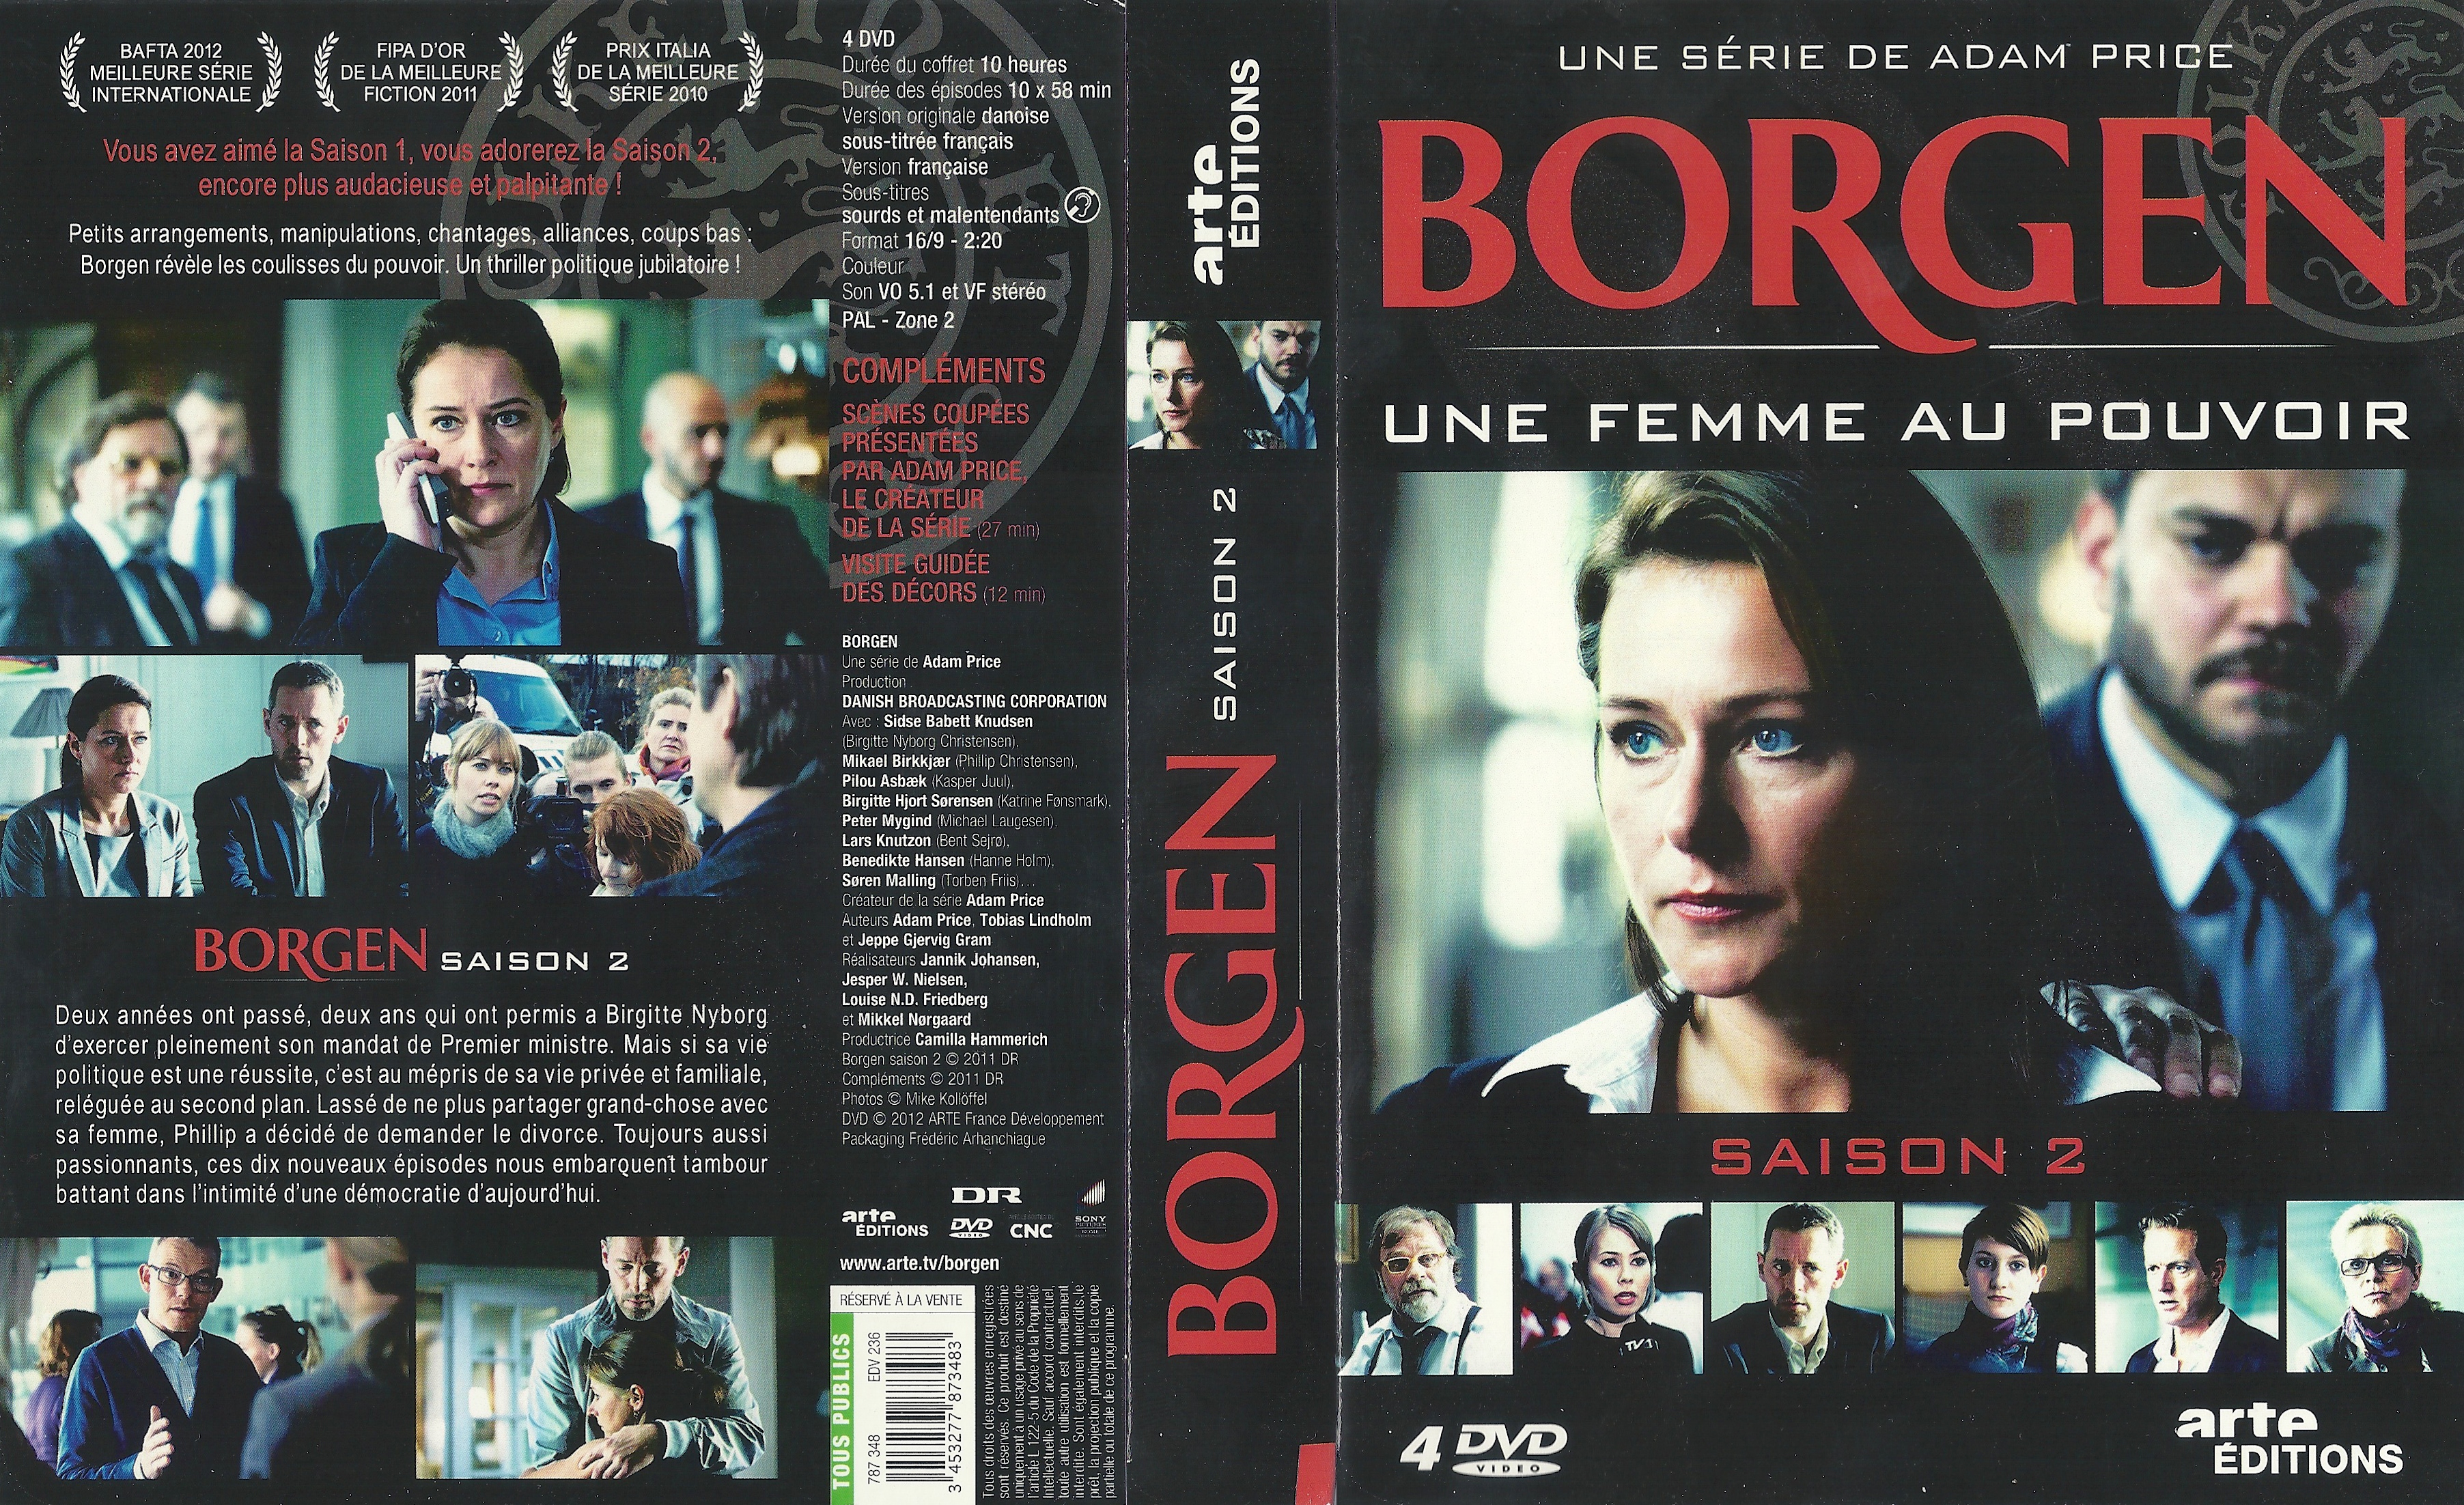 Jaquette DVD Borgen Saison 2